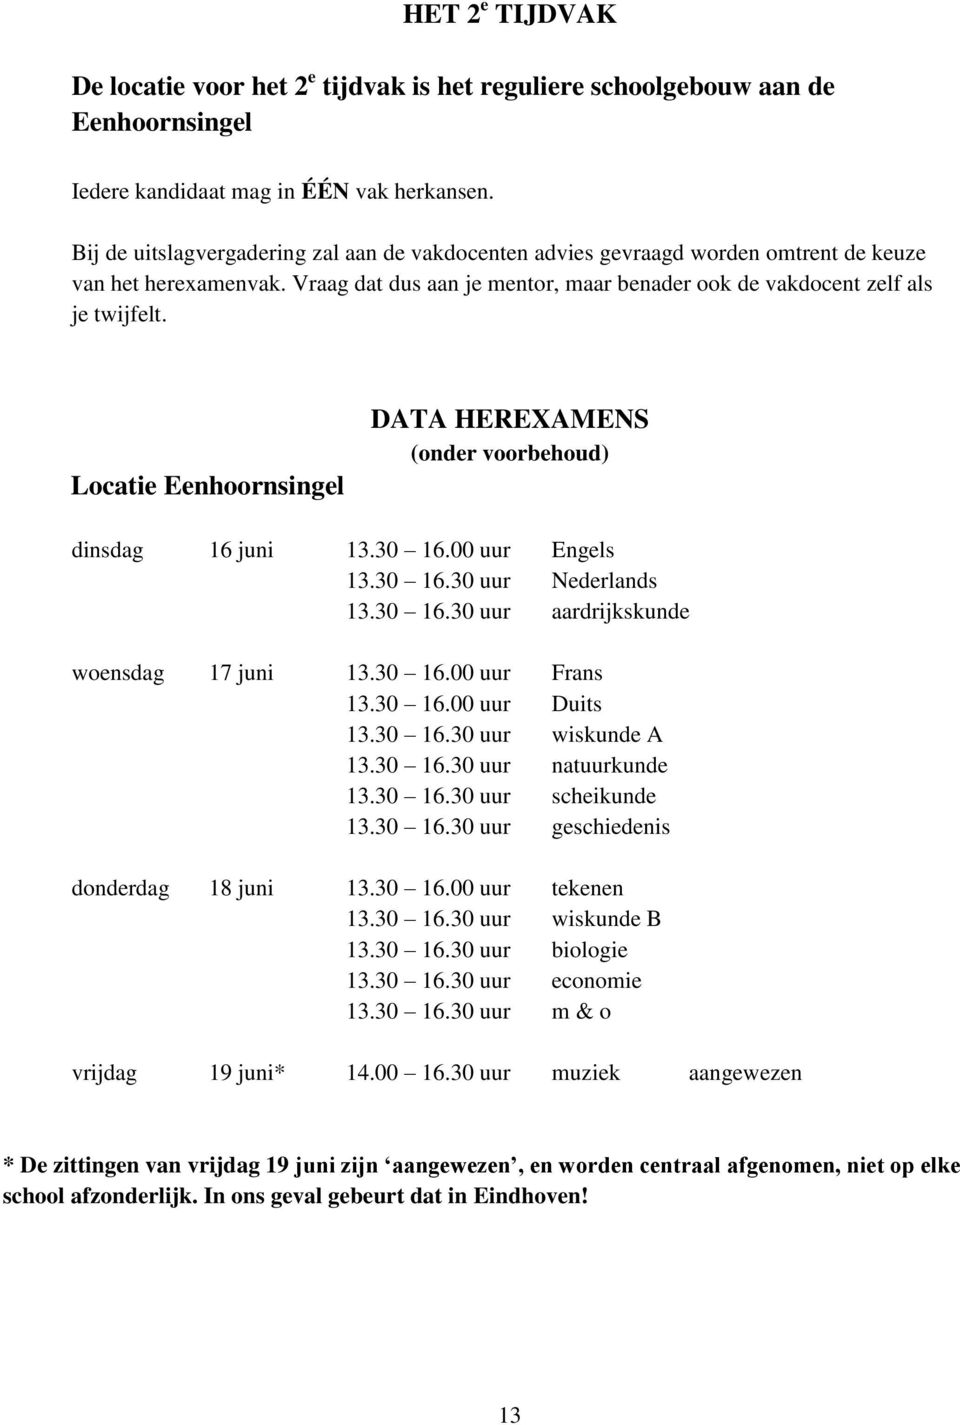 Locatie Eenhoornsingel DATA HEREXAMENS (onder voorbehoud) dinsdag 16 juni 13.30 16.00 uur Engels 13.30 16.30 uur Nederlands 13.30 16.30 uur aardrijkskunde woensdag 17 juni 13.30 16.00 uur Frans 13.